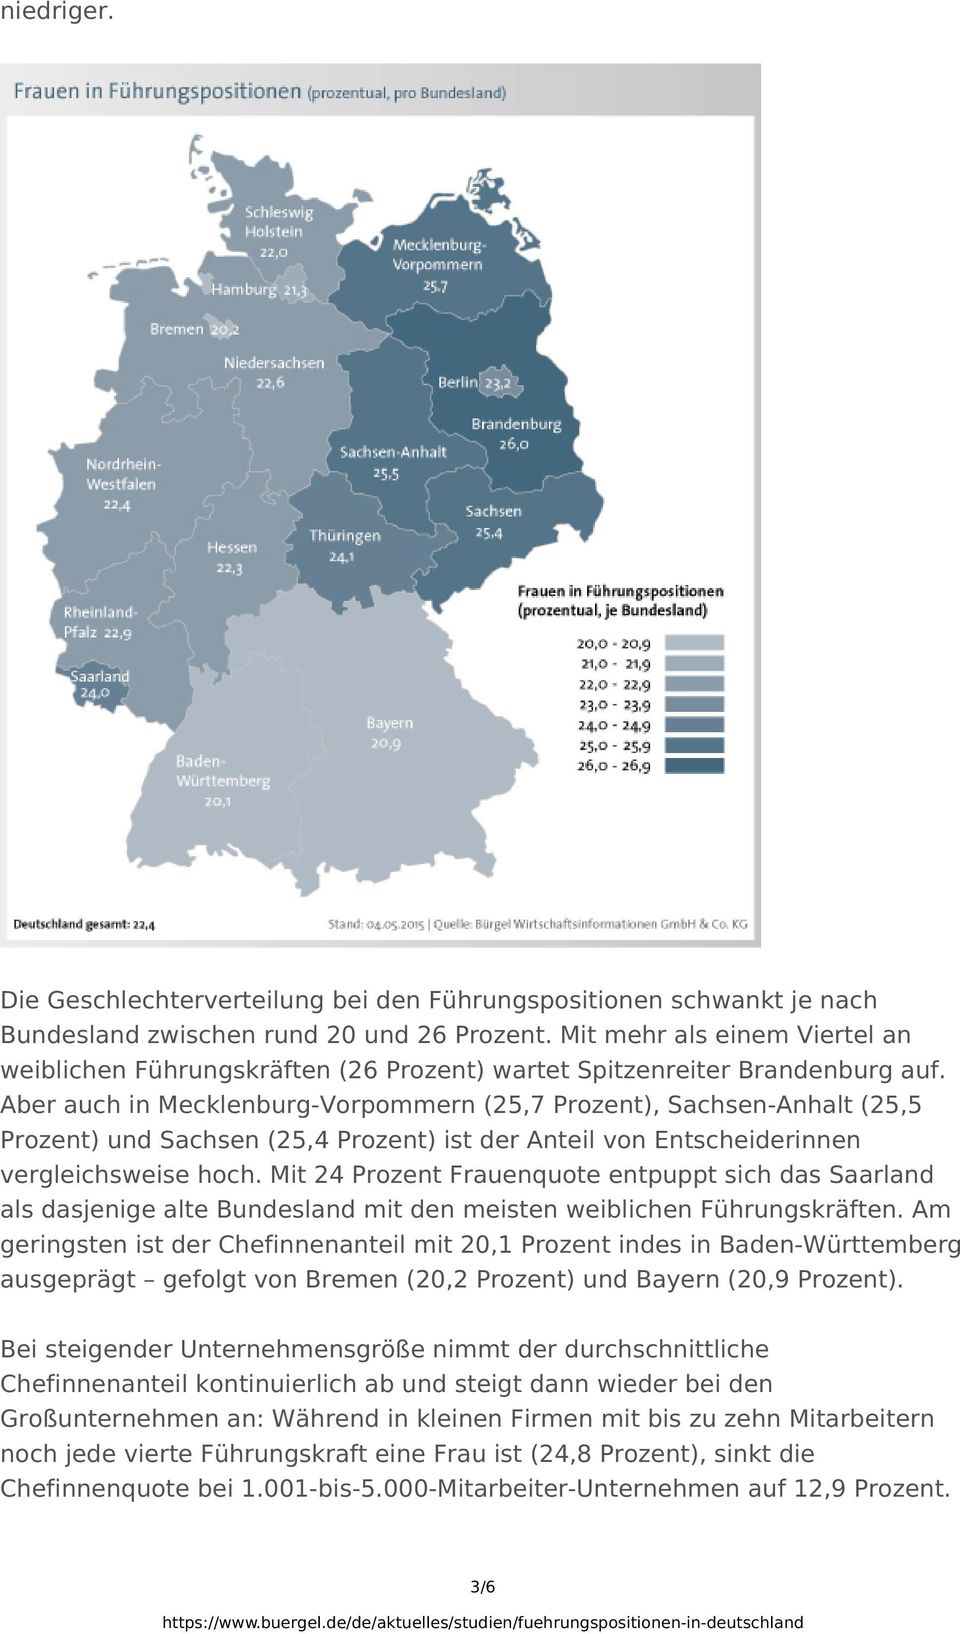 Aber auch in Mecklenburg-Vorpommern (25,7 Prozent), Sachsen-Anhalt (25,5 Prozent) und Sachsen (25,4 Prozent) ist der Anteil von Entscheiderinnen vergleichsweise hoch.